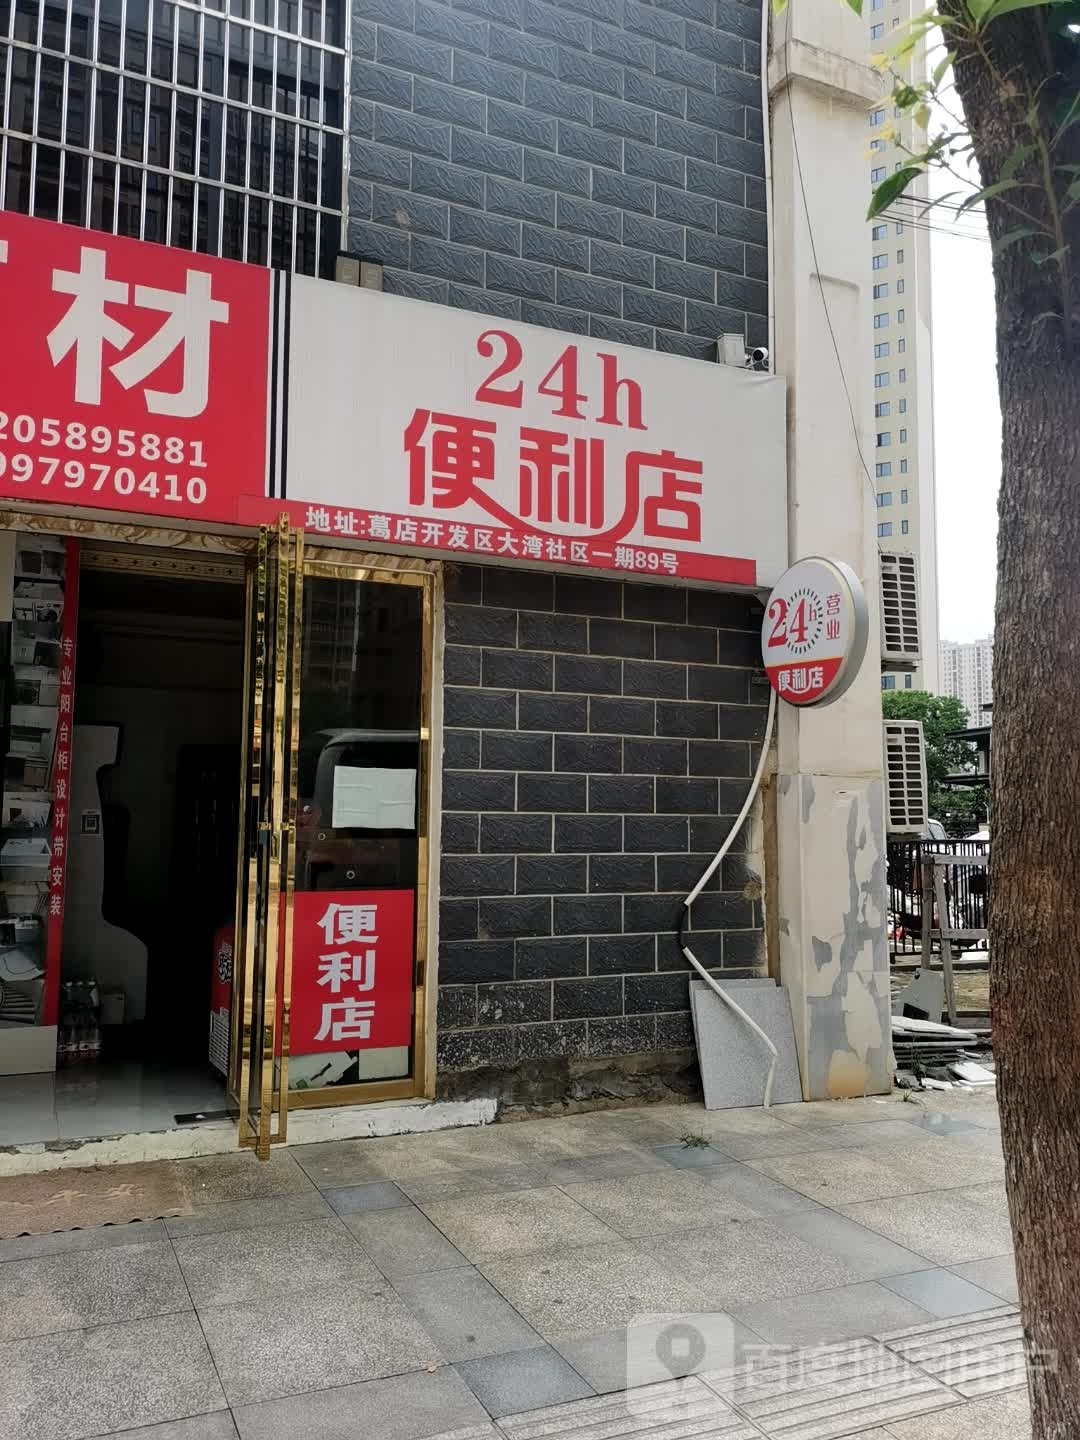 24小十便利店(湖滨大道店)